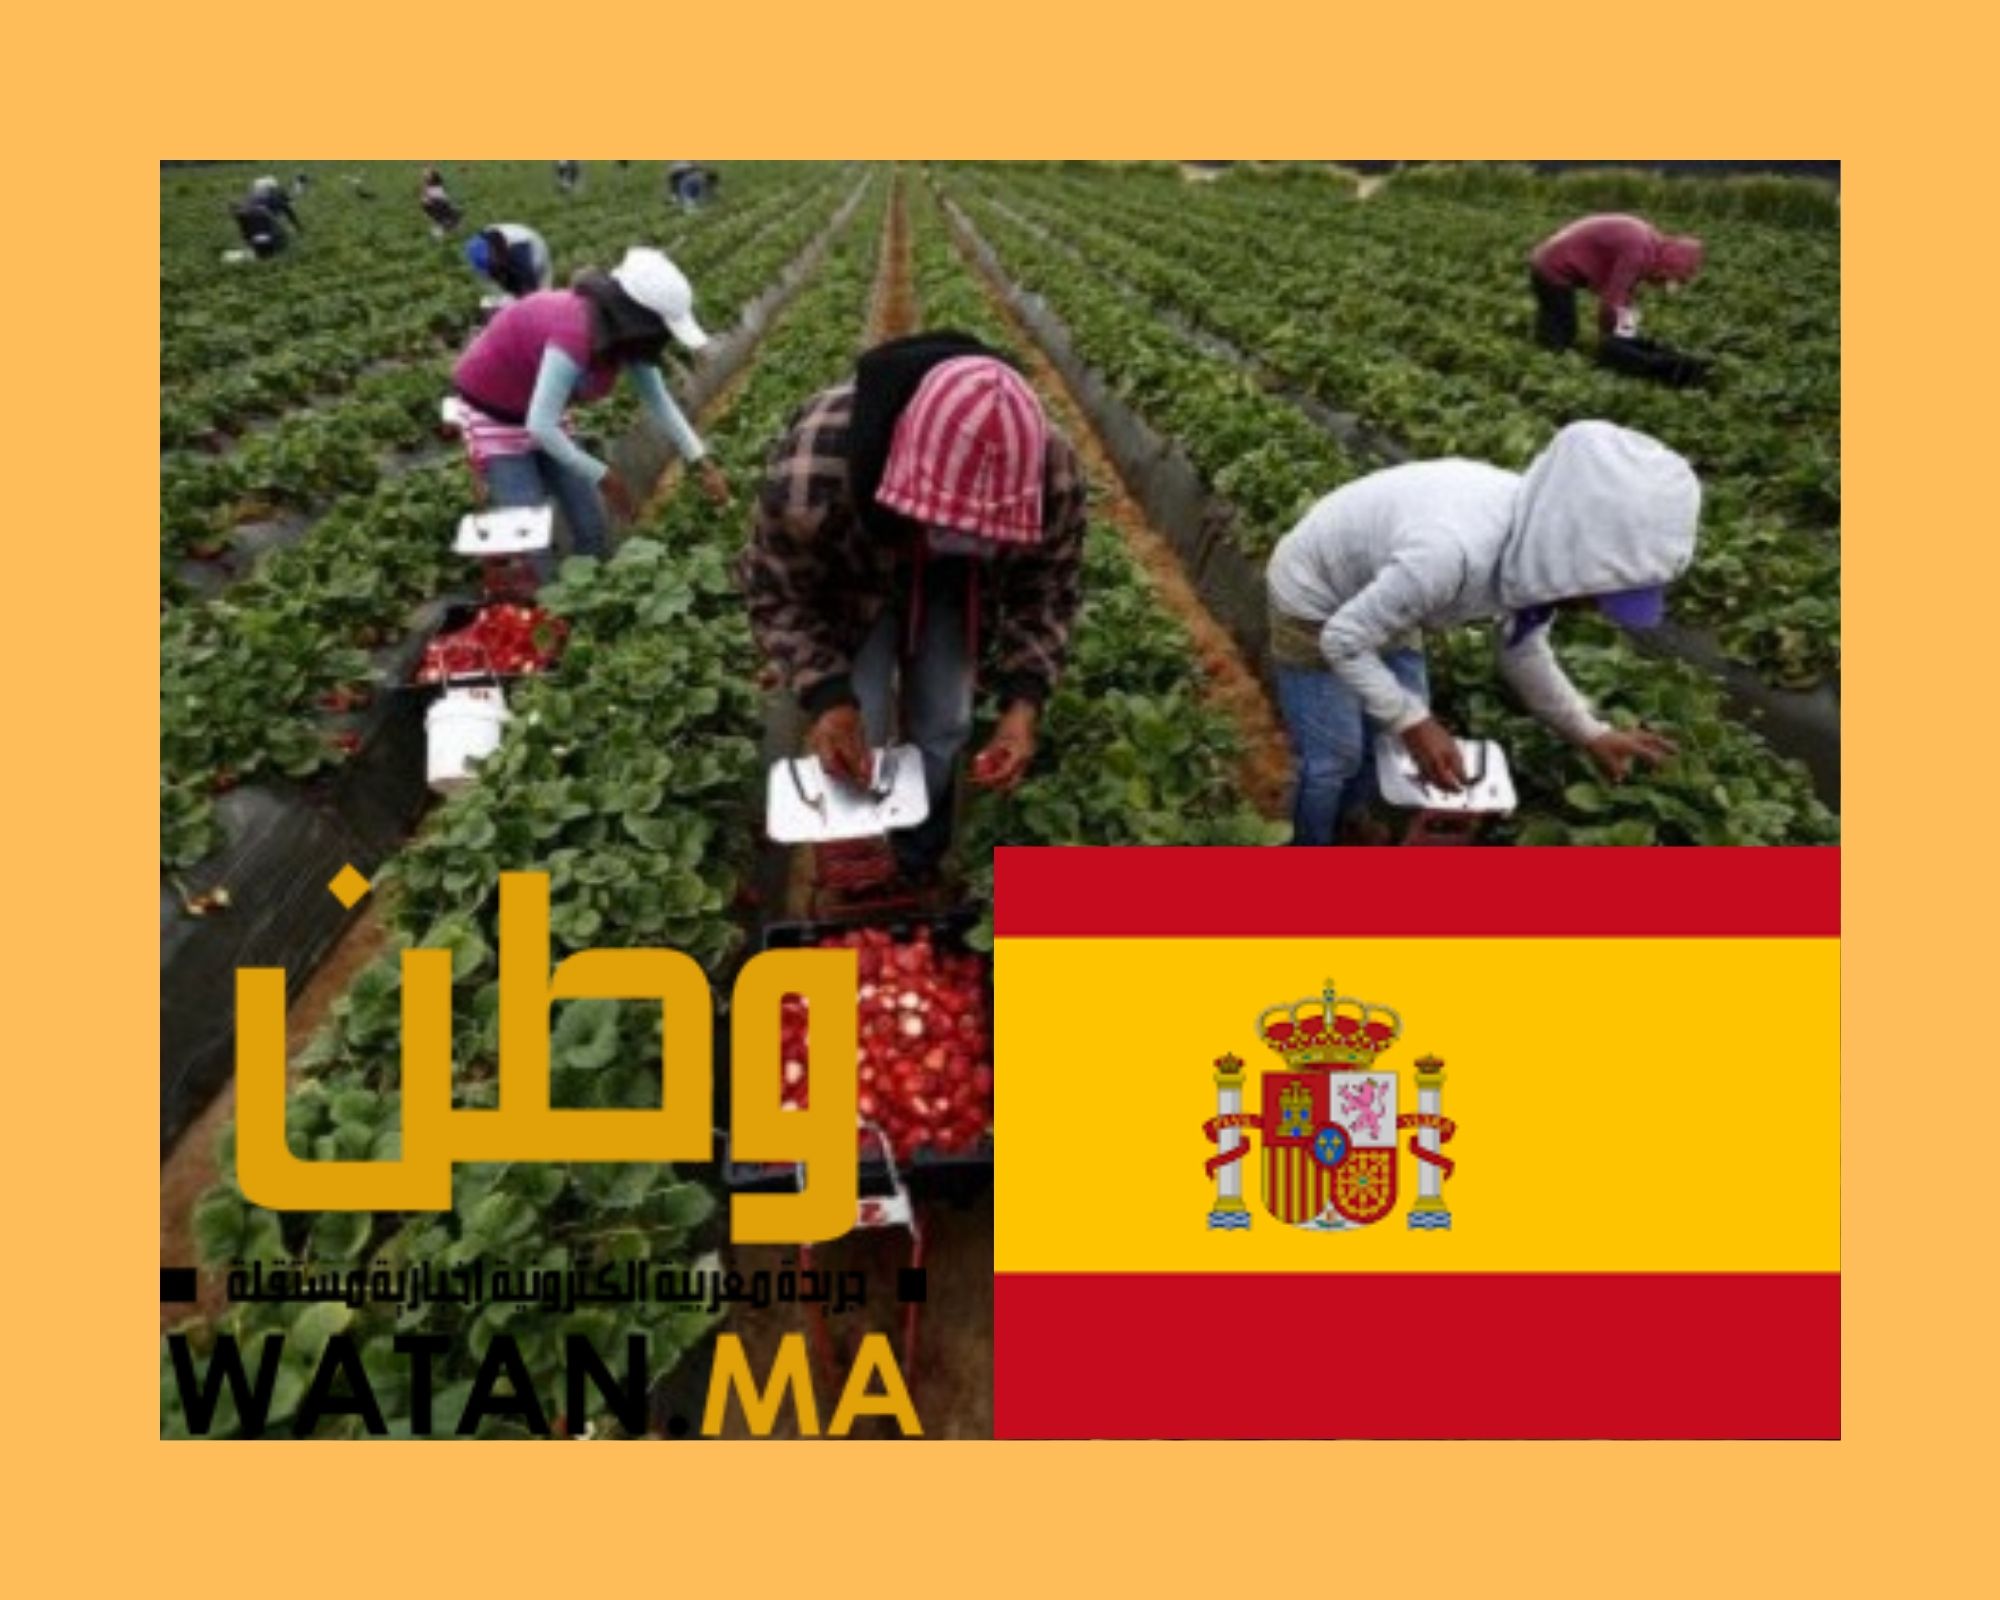 الحكومة الاسبانية تعلن عن برنامج لتحسين ظروف اشتغال عاملات الفراولة المغربيات